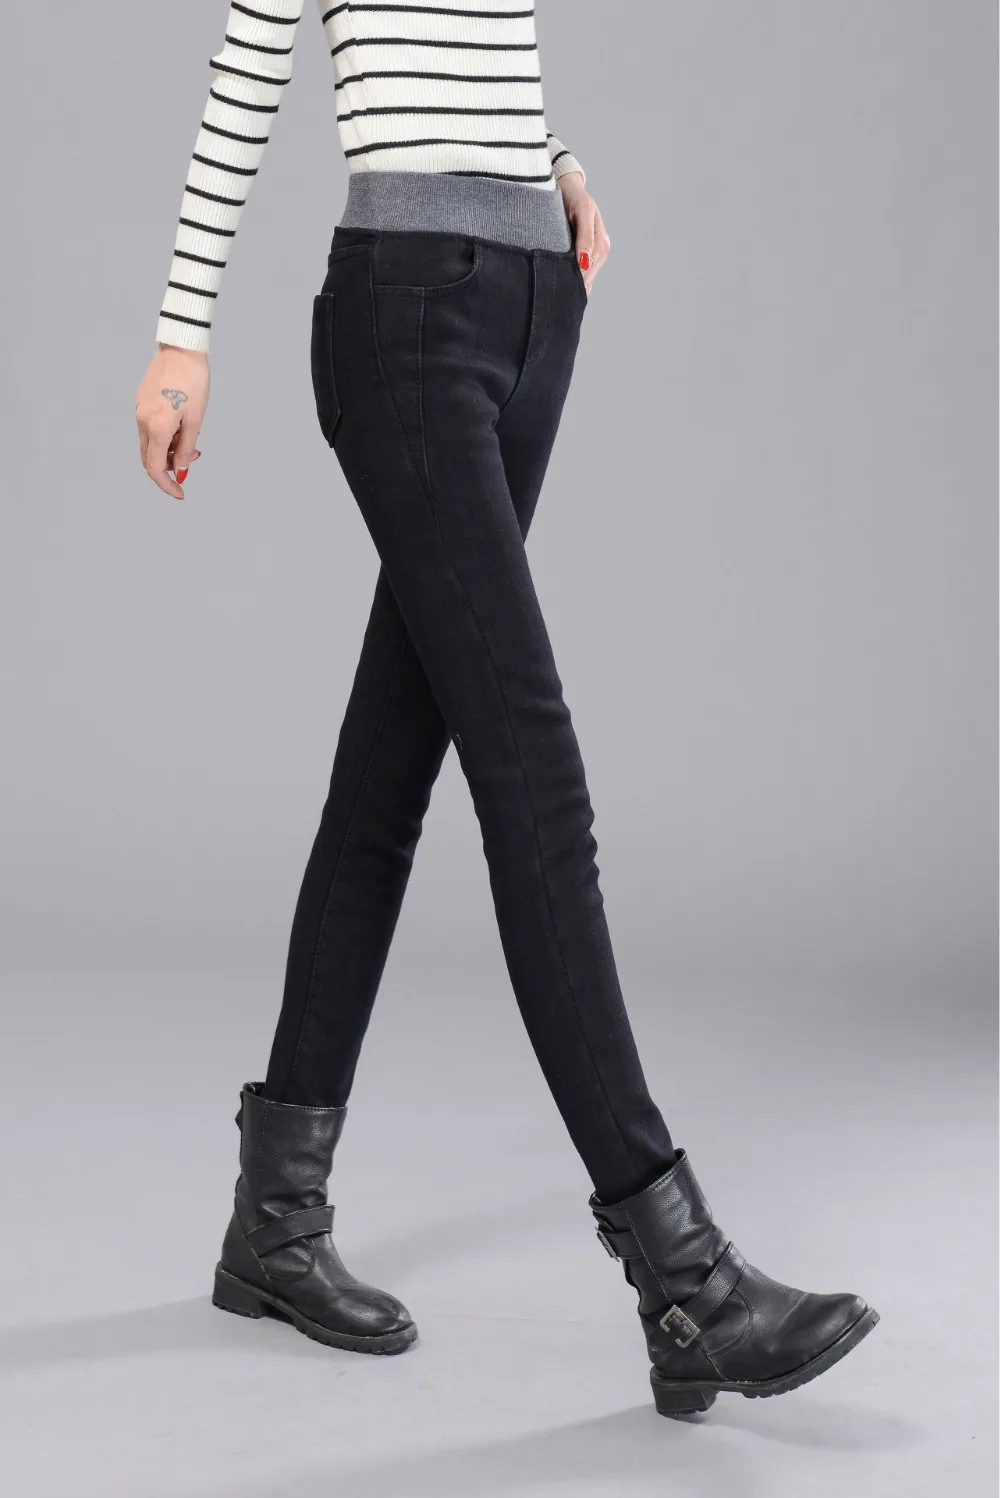 WKOUD 2019 весенние джинсы женские золотые флисовые теплые джинсовые брюки утолщенные тонкие с высокой талией узкие брюки женские осенние